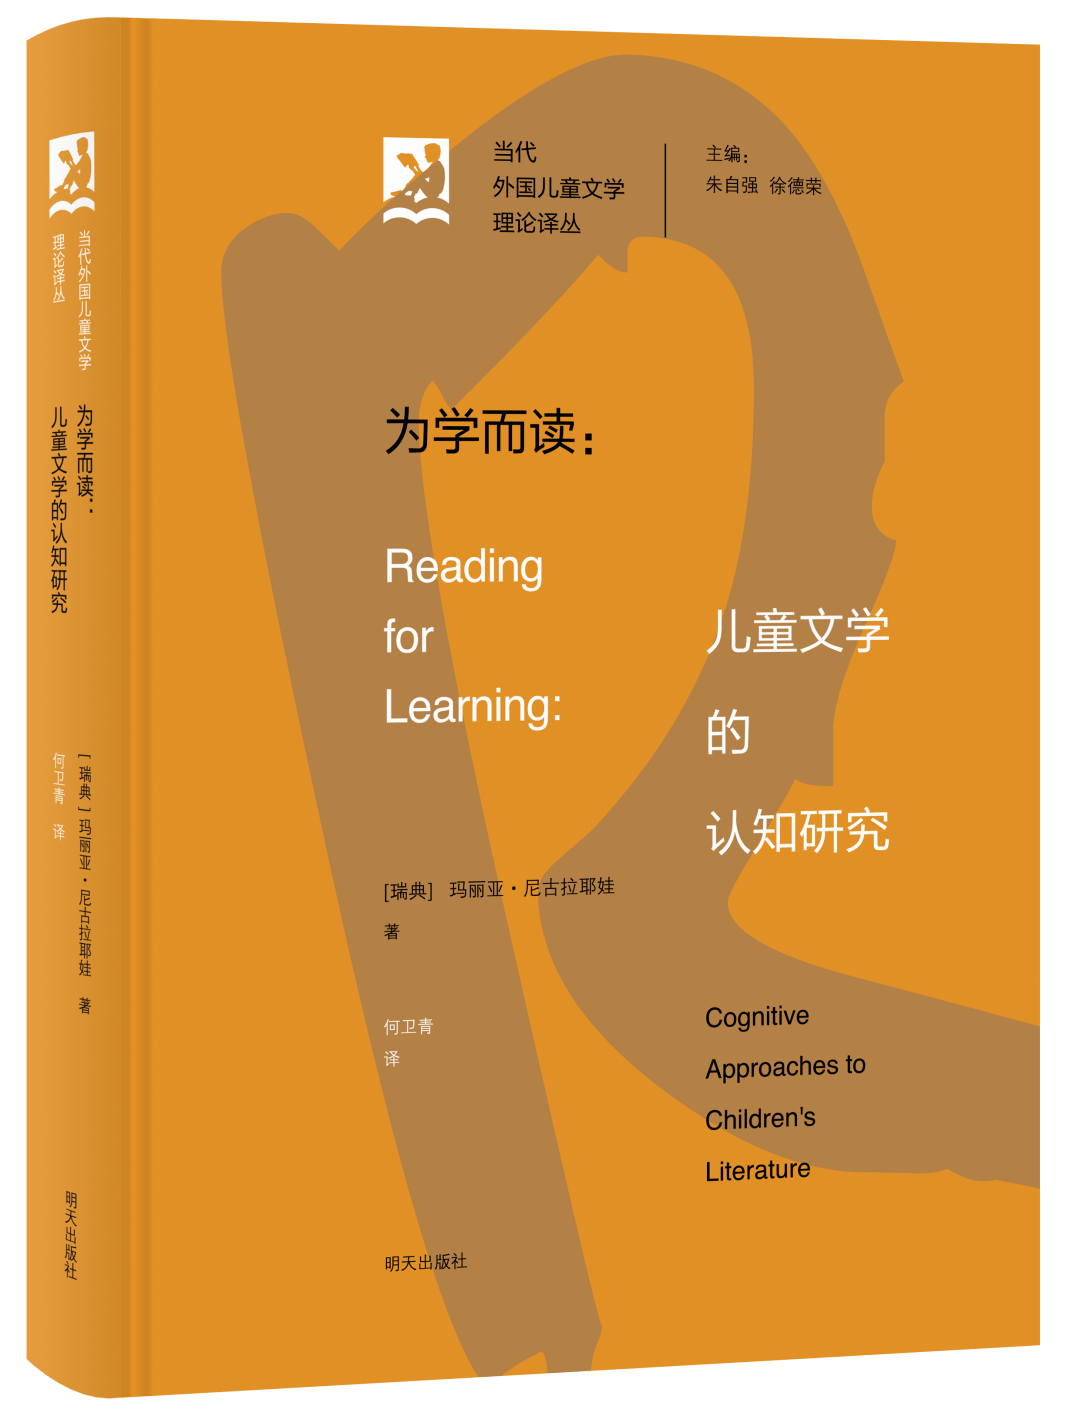 半岛体育明天社 3种图书入选《中国教育报》“2022年度教师推荐的10大童书”和“2022年度教师喜爱的100本书”(图6)